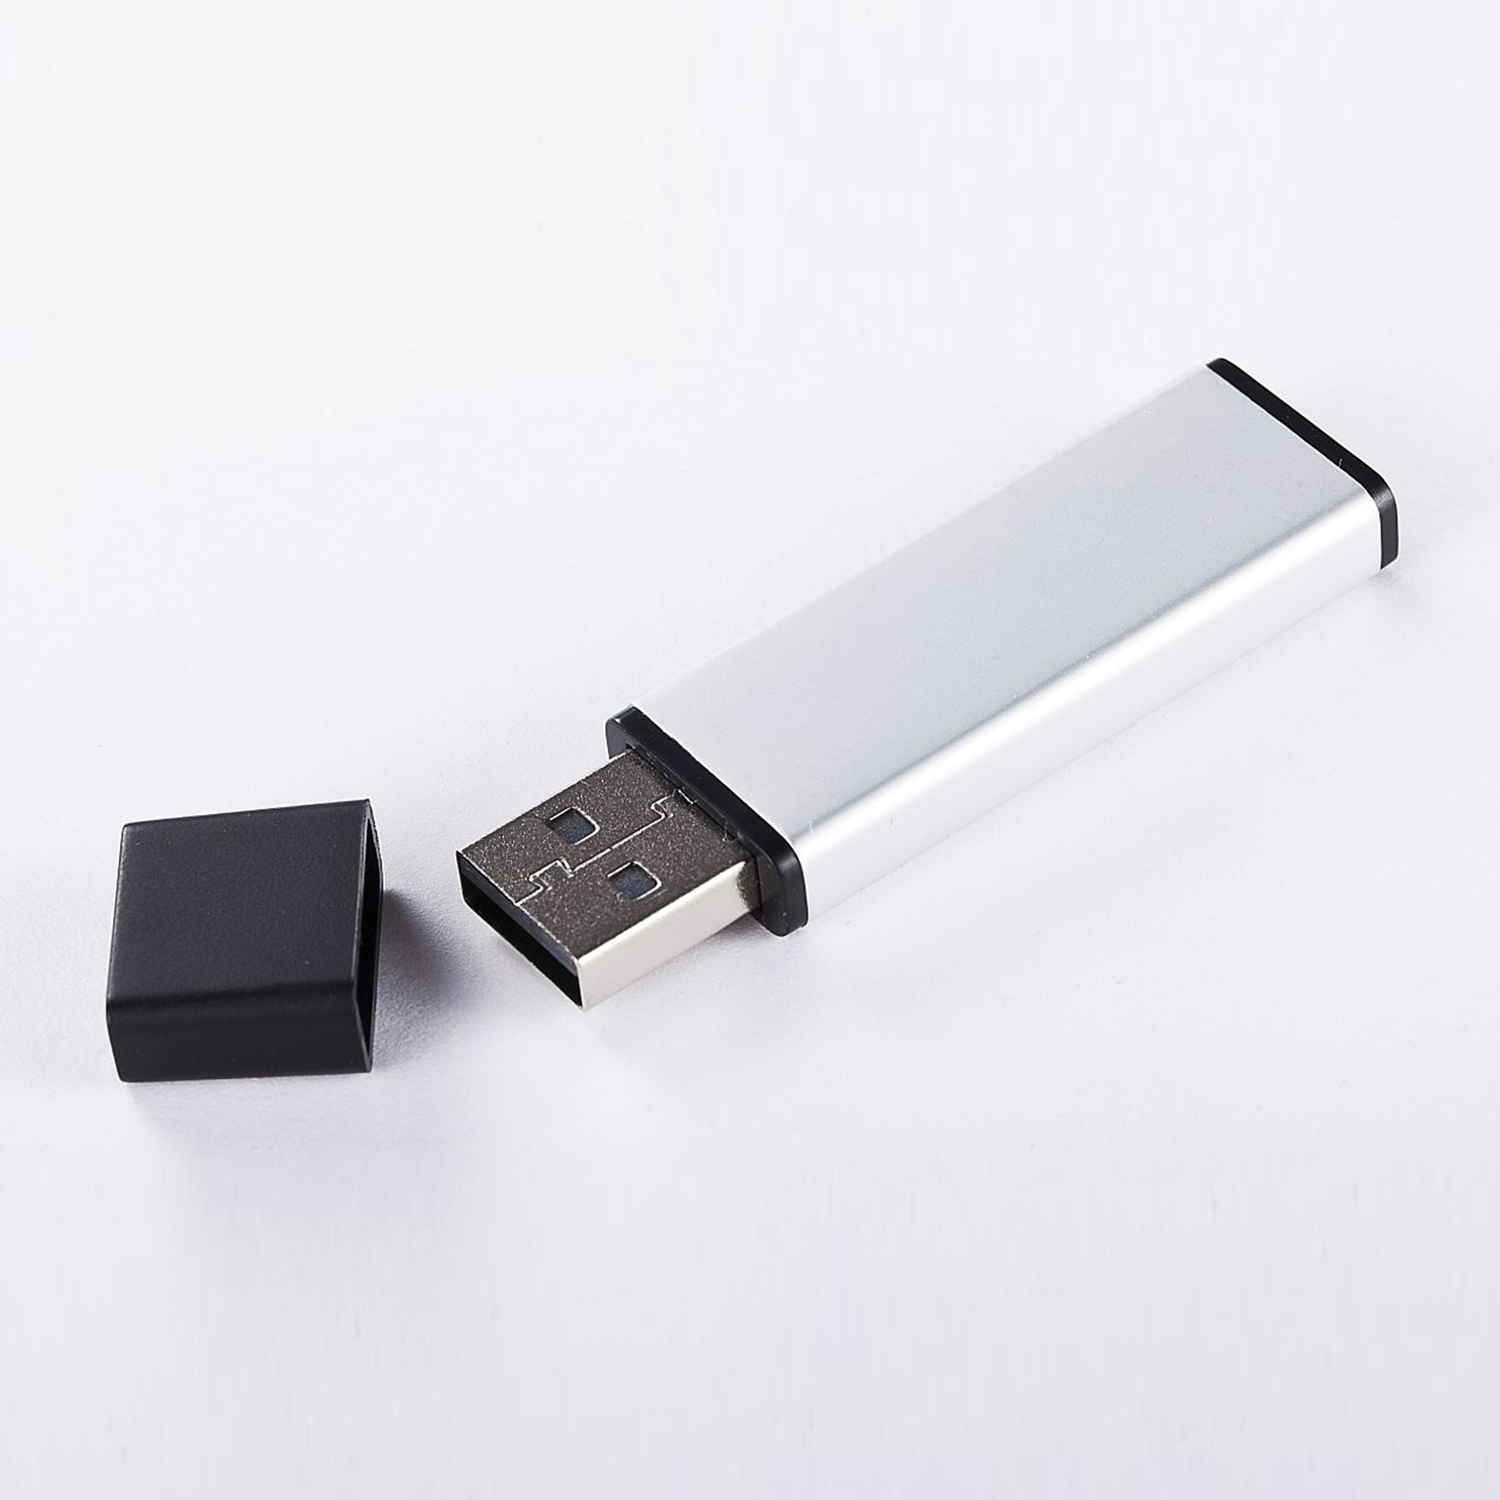 USB Stick GB) 2 2.0 XLYNE GB USB - 2 (ALUMINIUM,